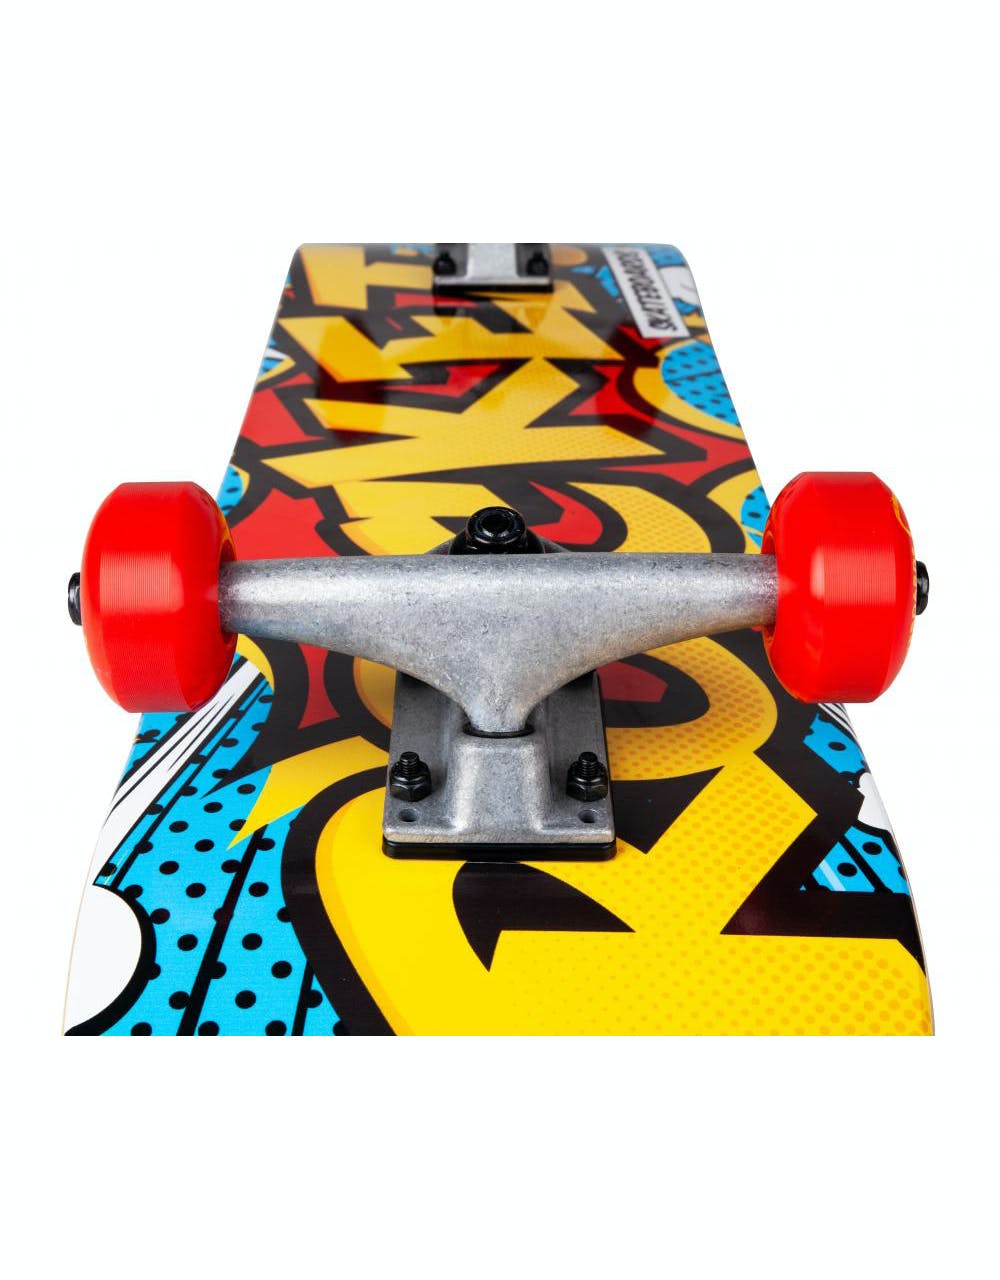 Rocket Pop Art Complete Skateboard - 7.5"